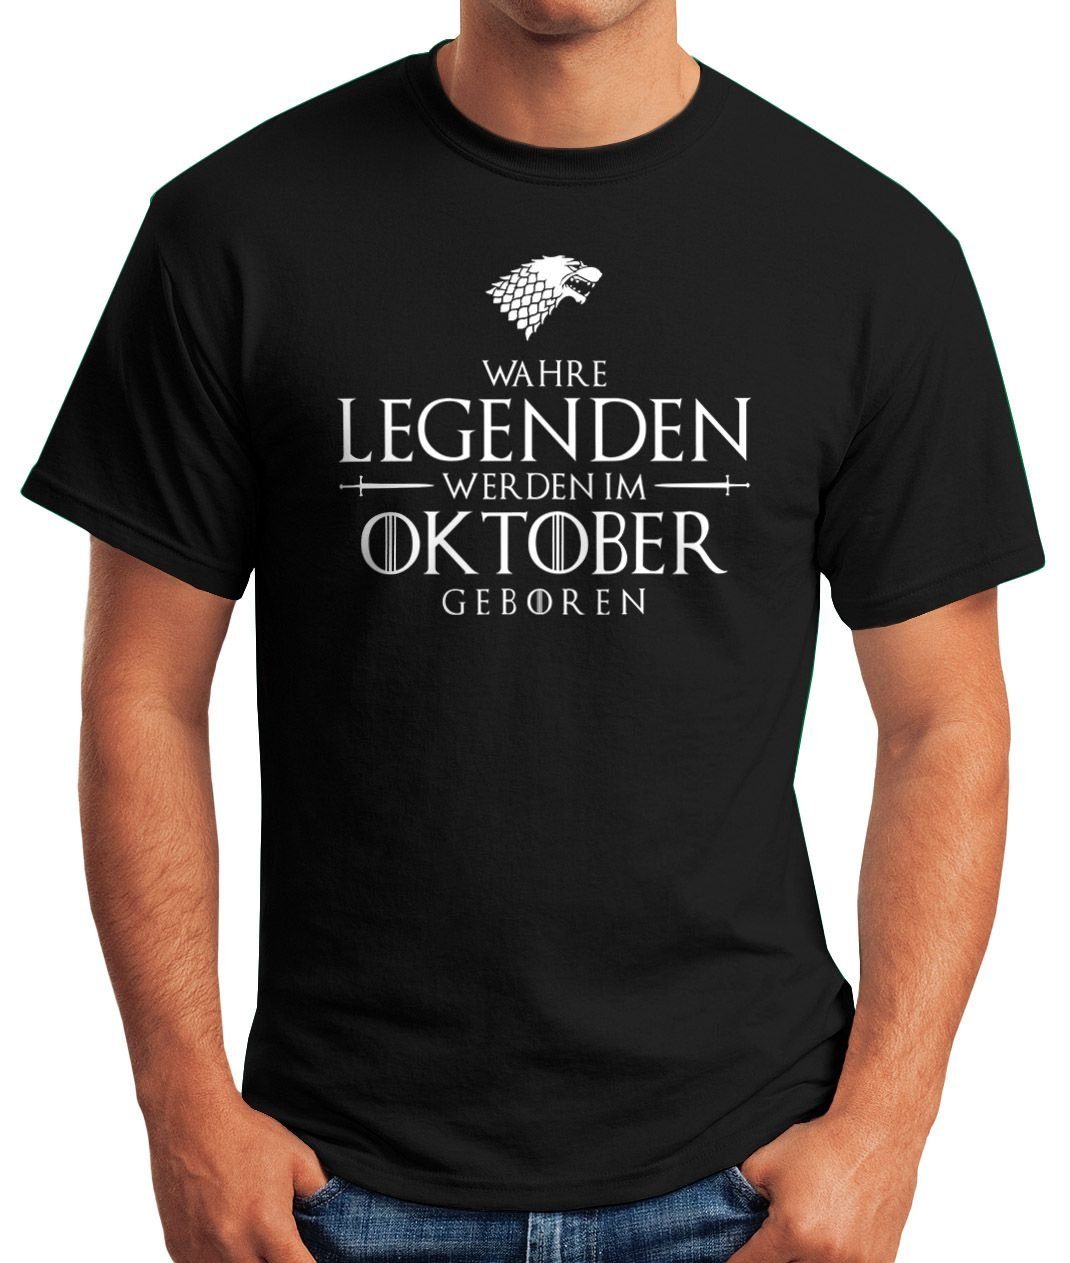 Print-Shirt T-Shirt Fun-Shirt Herren Object] im Oktober geboren MoonWorks werden Moonworks® [object Wahre Print schwarz Legenden mit